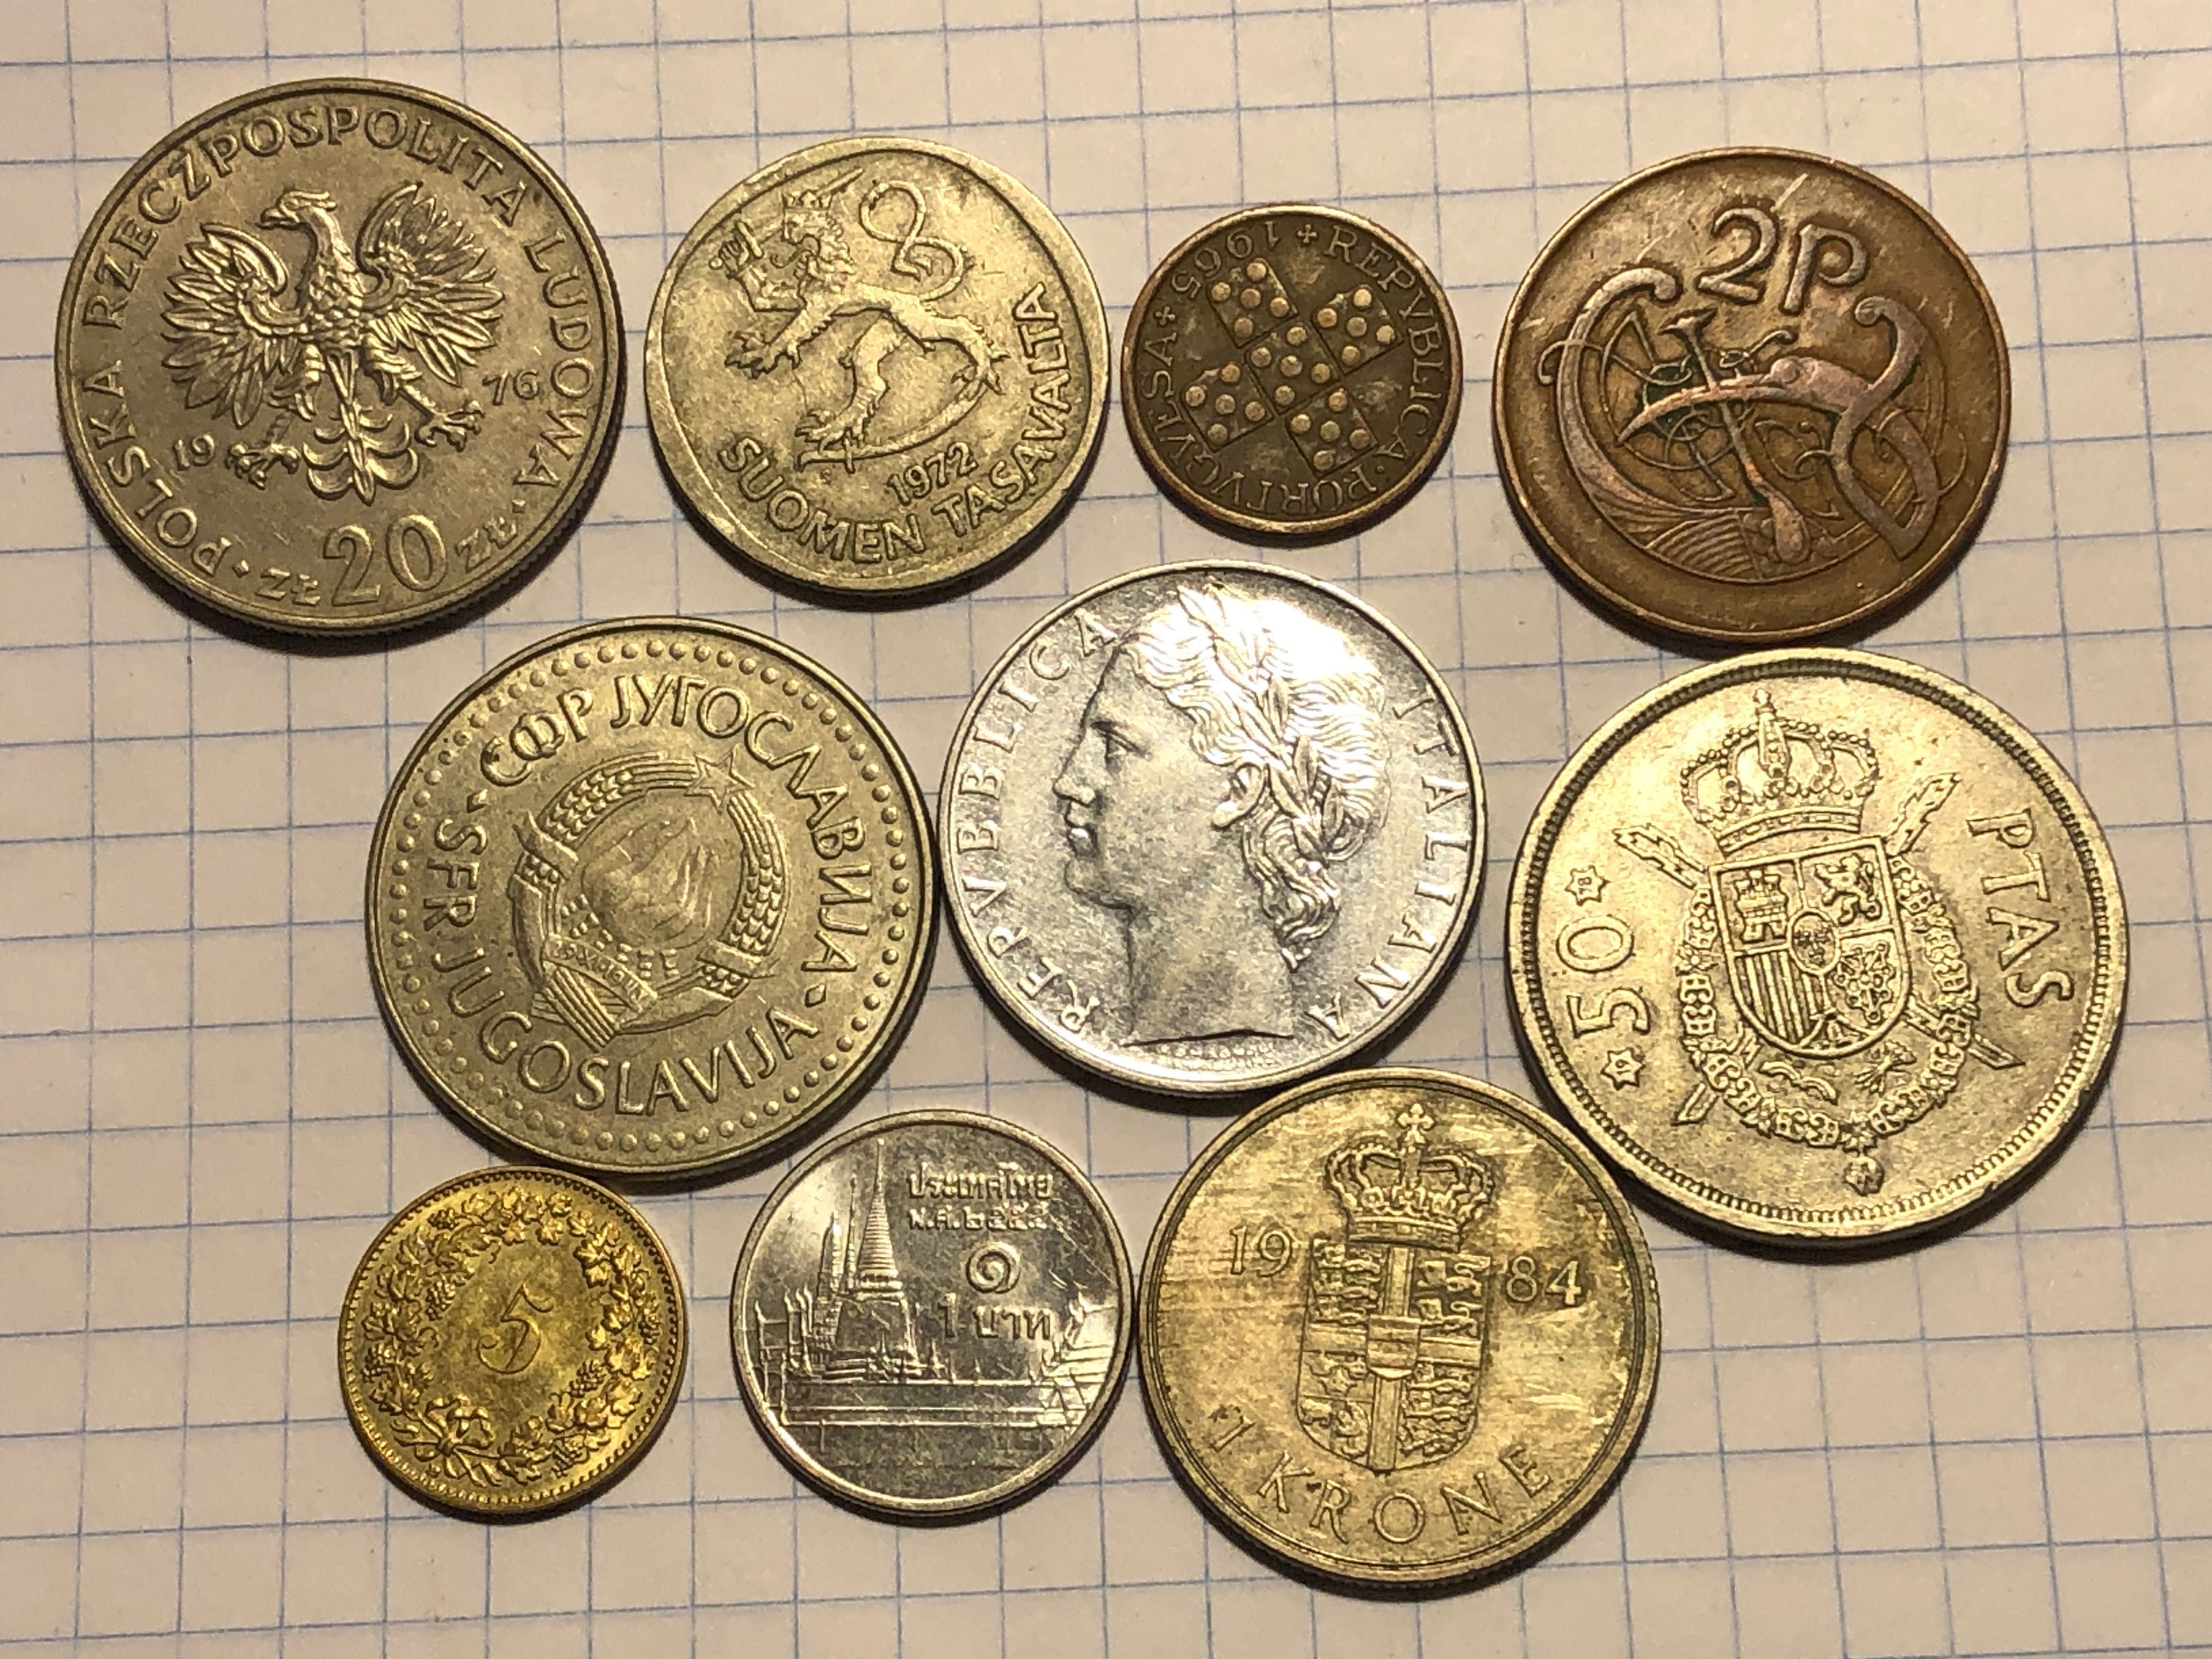 Коллекция монет разных стран второй половины ХХ в.